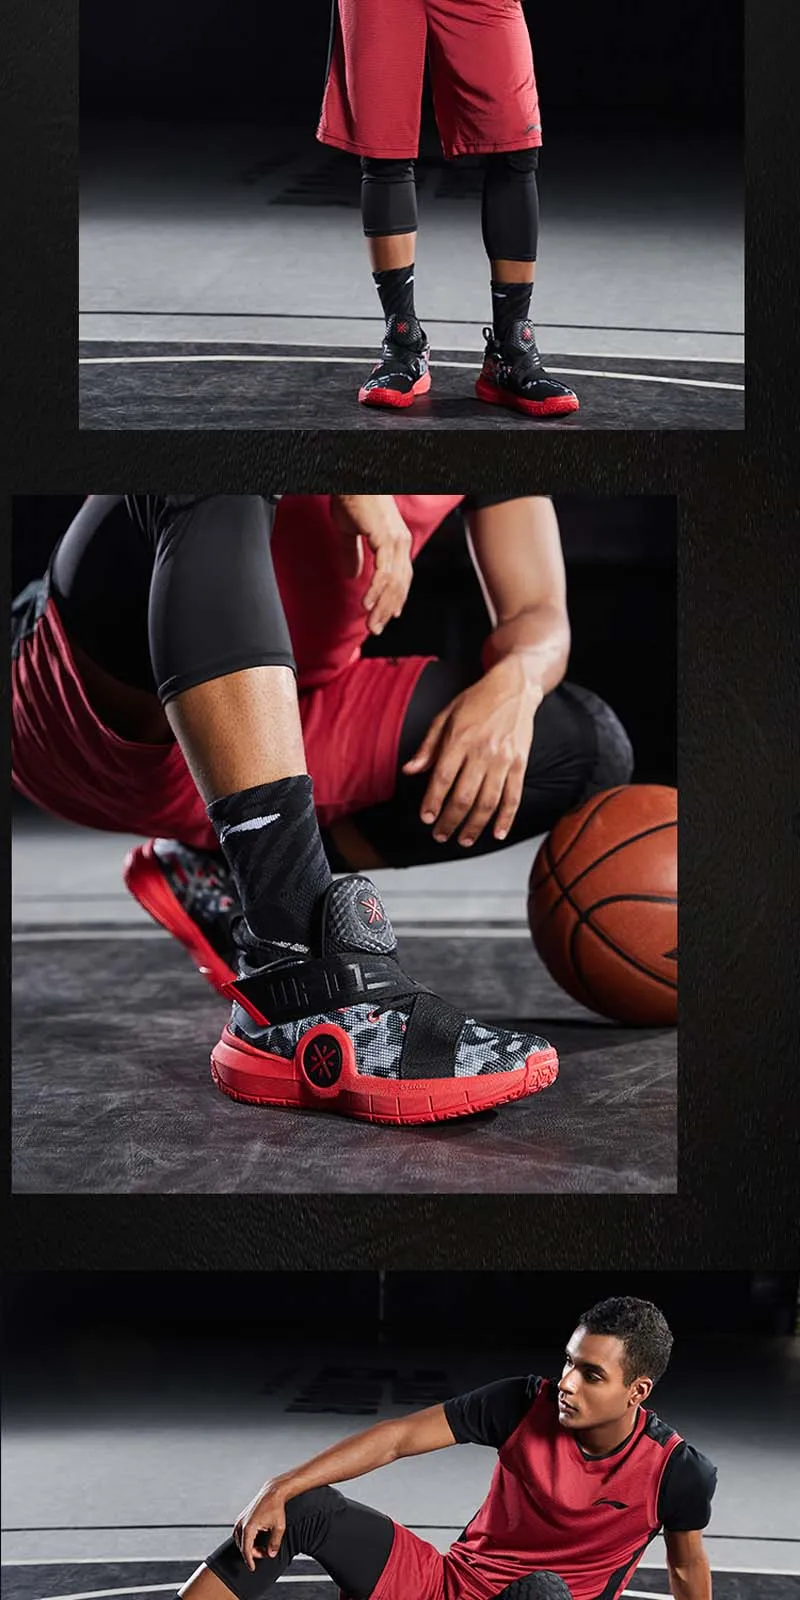 Li-Ning/мужские кроссовки ALL CITY 7 Wade, профессиональные баскетбольные кроссовки с подушками, RB подкладка, облачная спортивная обувь, кроссовки ABAP105 XYL299